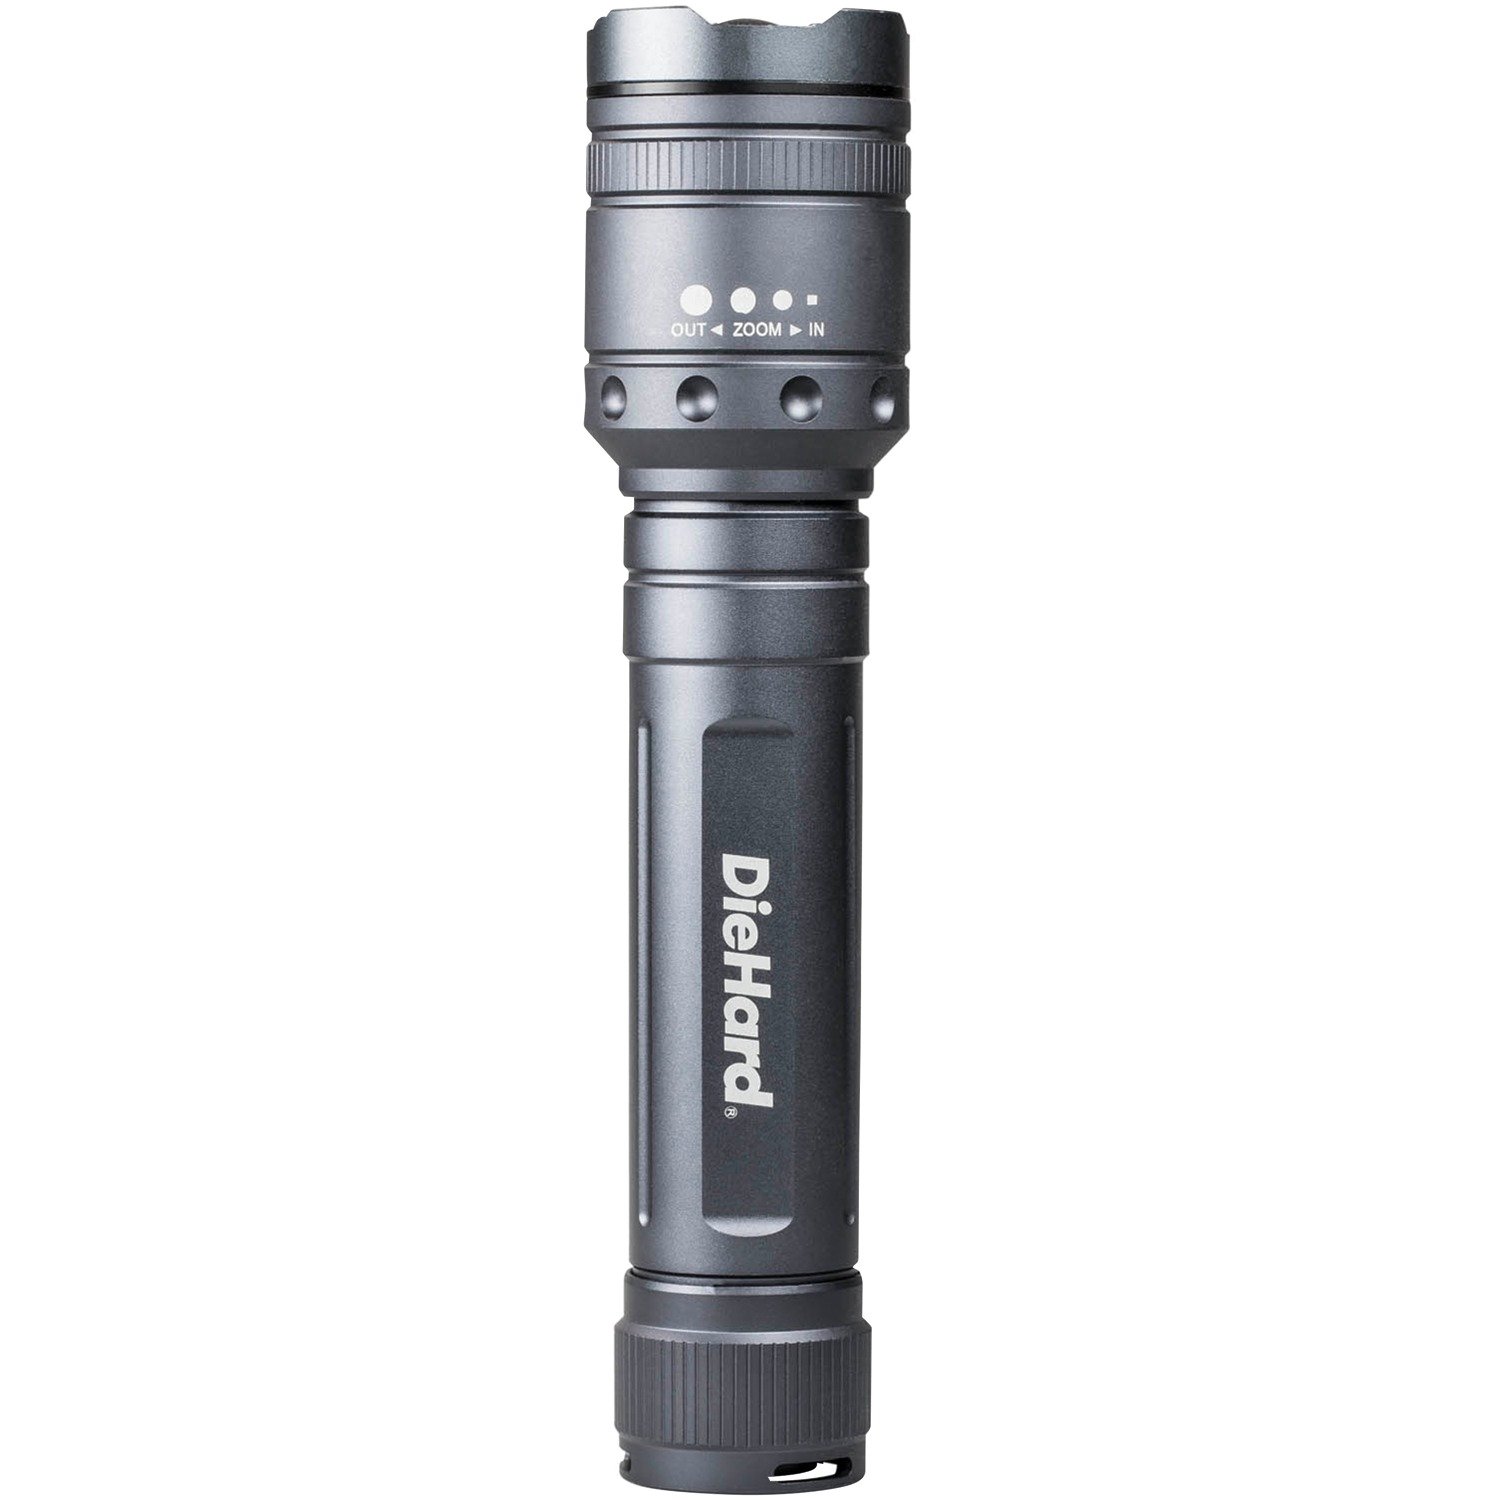 DIEHARD 41-6124 2,400-Lumen Twist Focus Flashlight